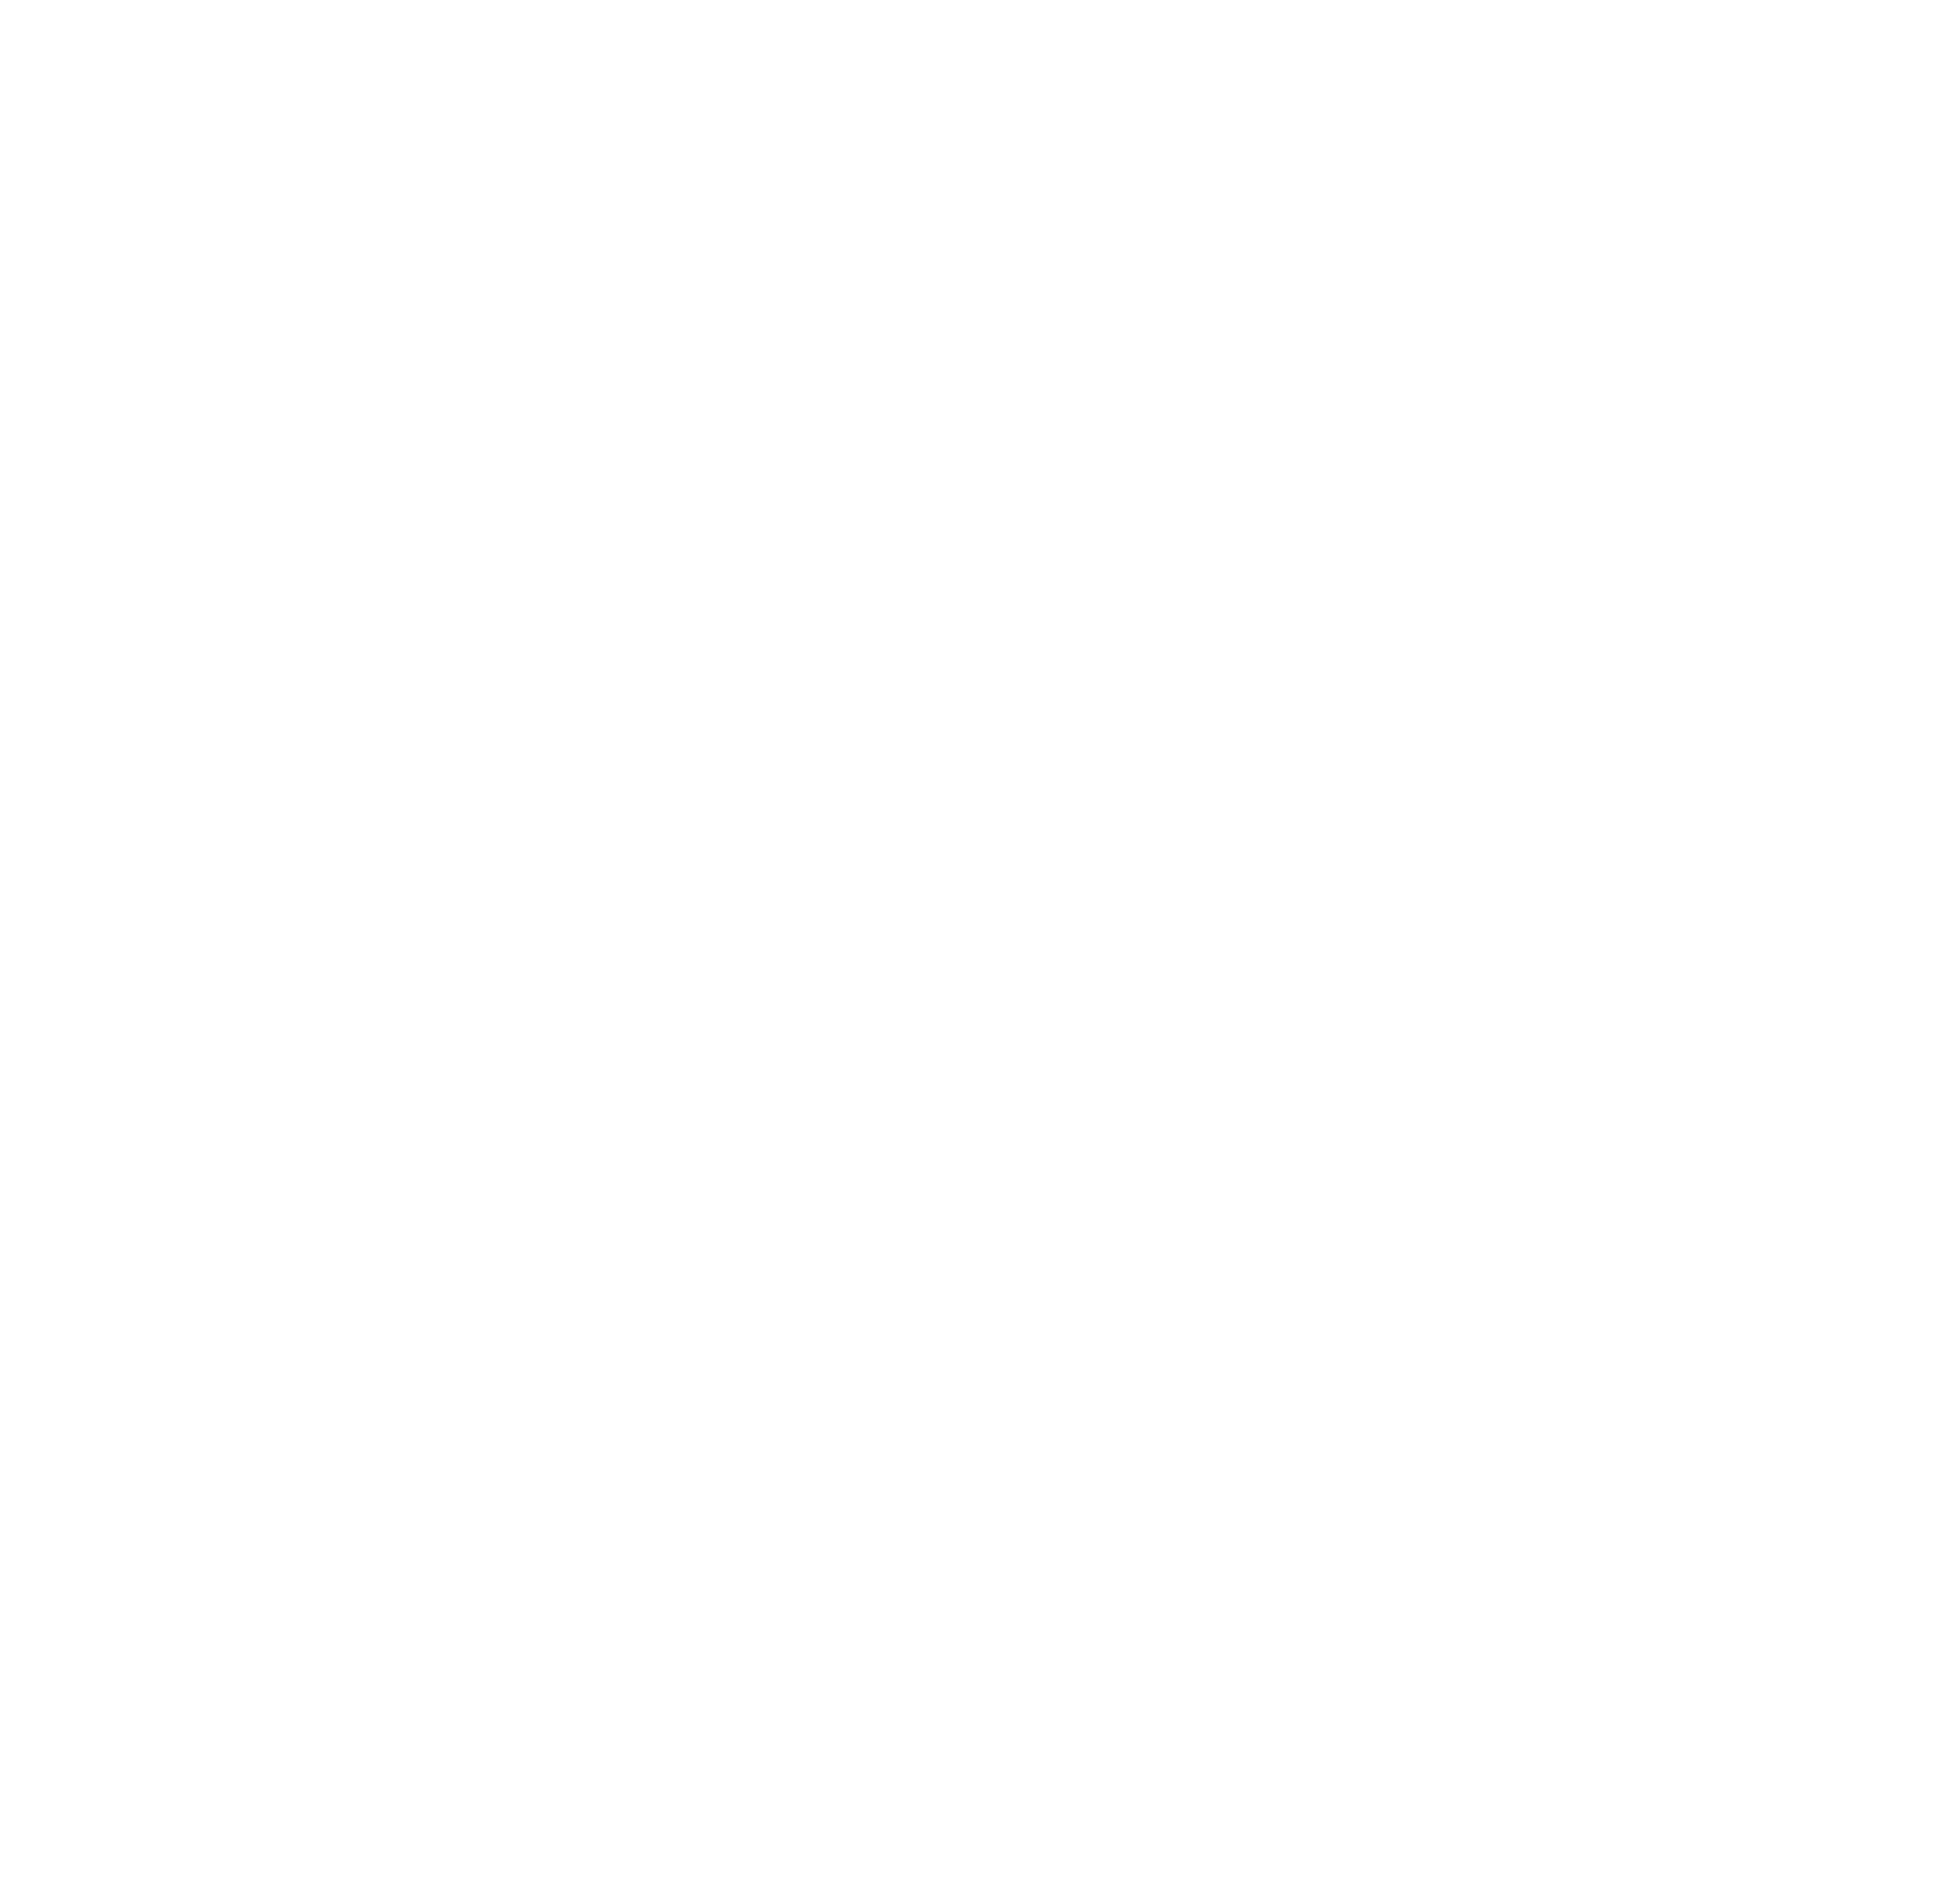 Air Gun Logo - About Us - West Devon Airgun Club